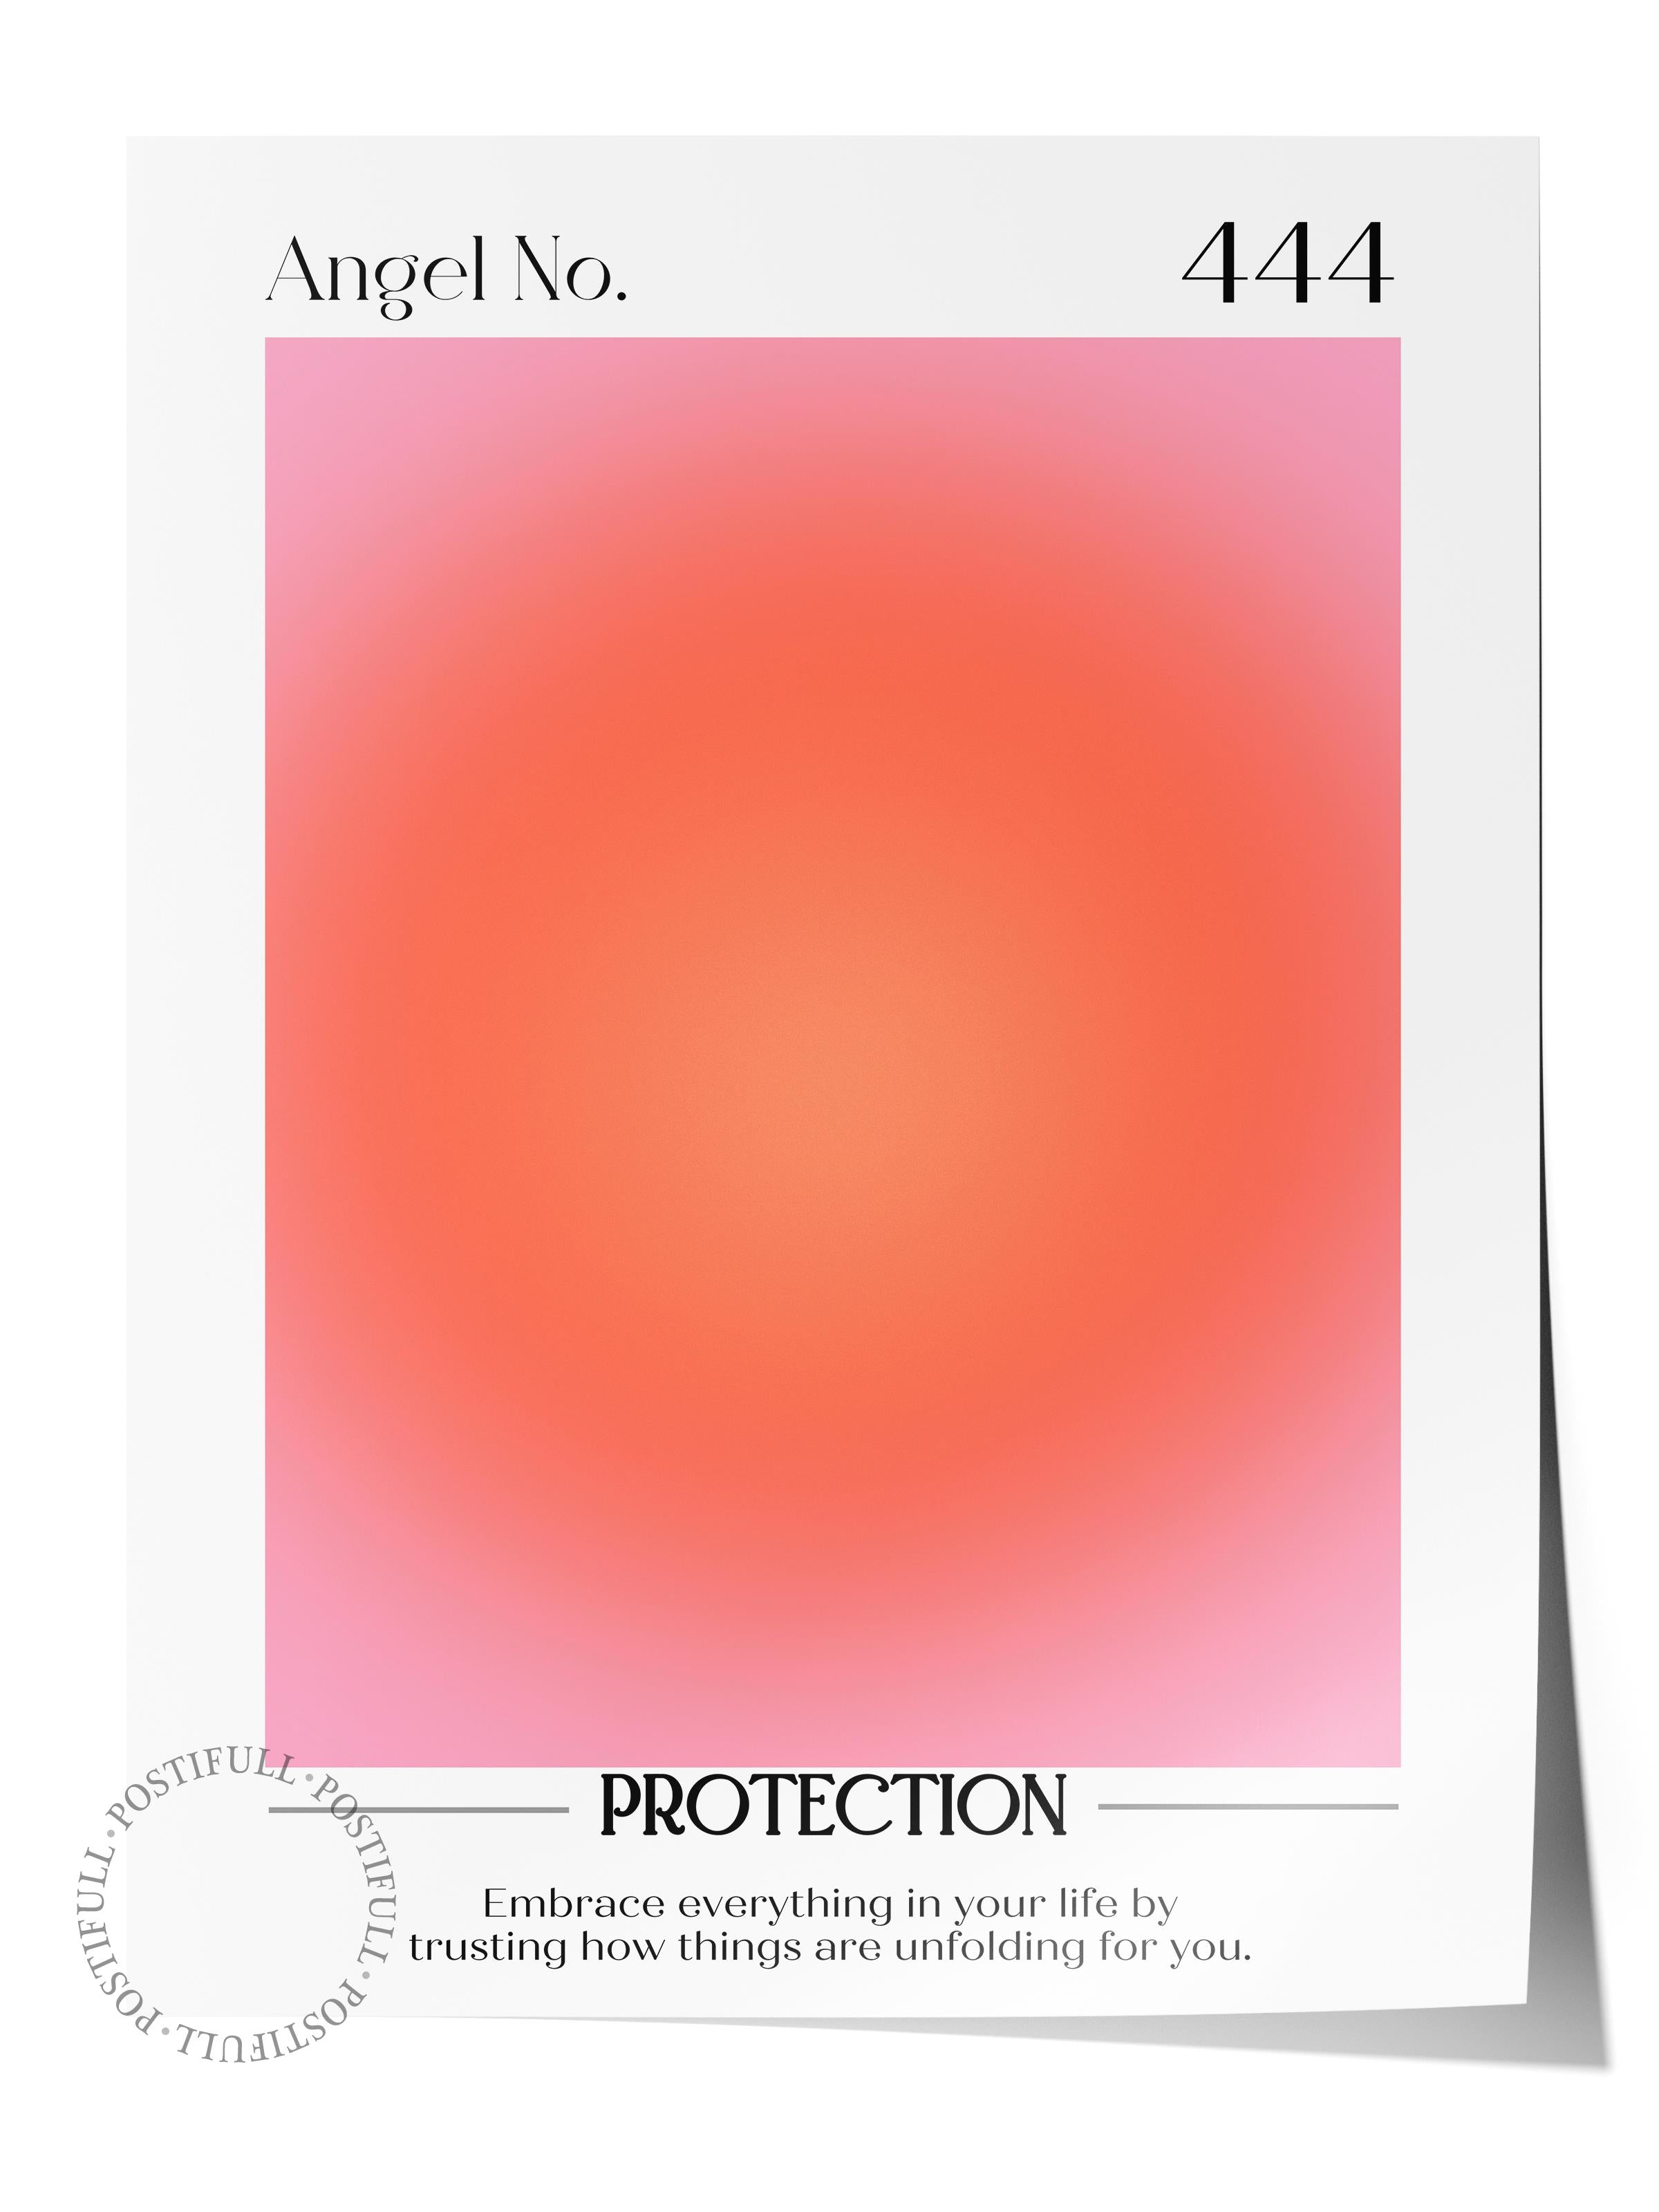 Çerçevesiz Poster, Aura Serisi NO:39 - 444 - Protection, Melek Numaraları, Renkli Poster